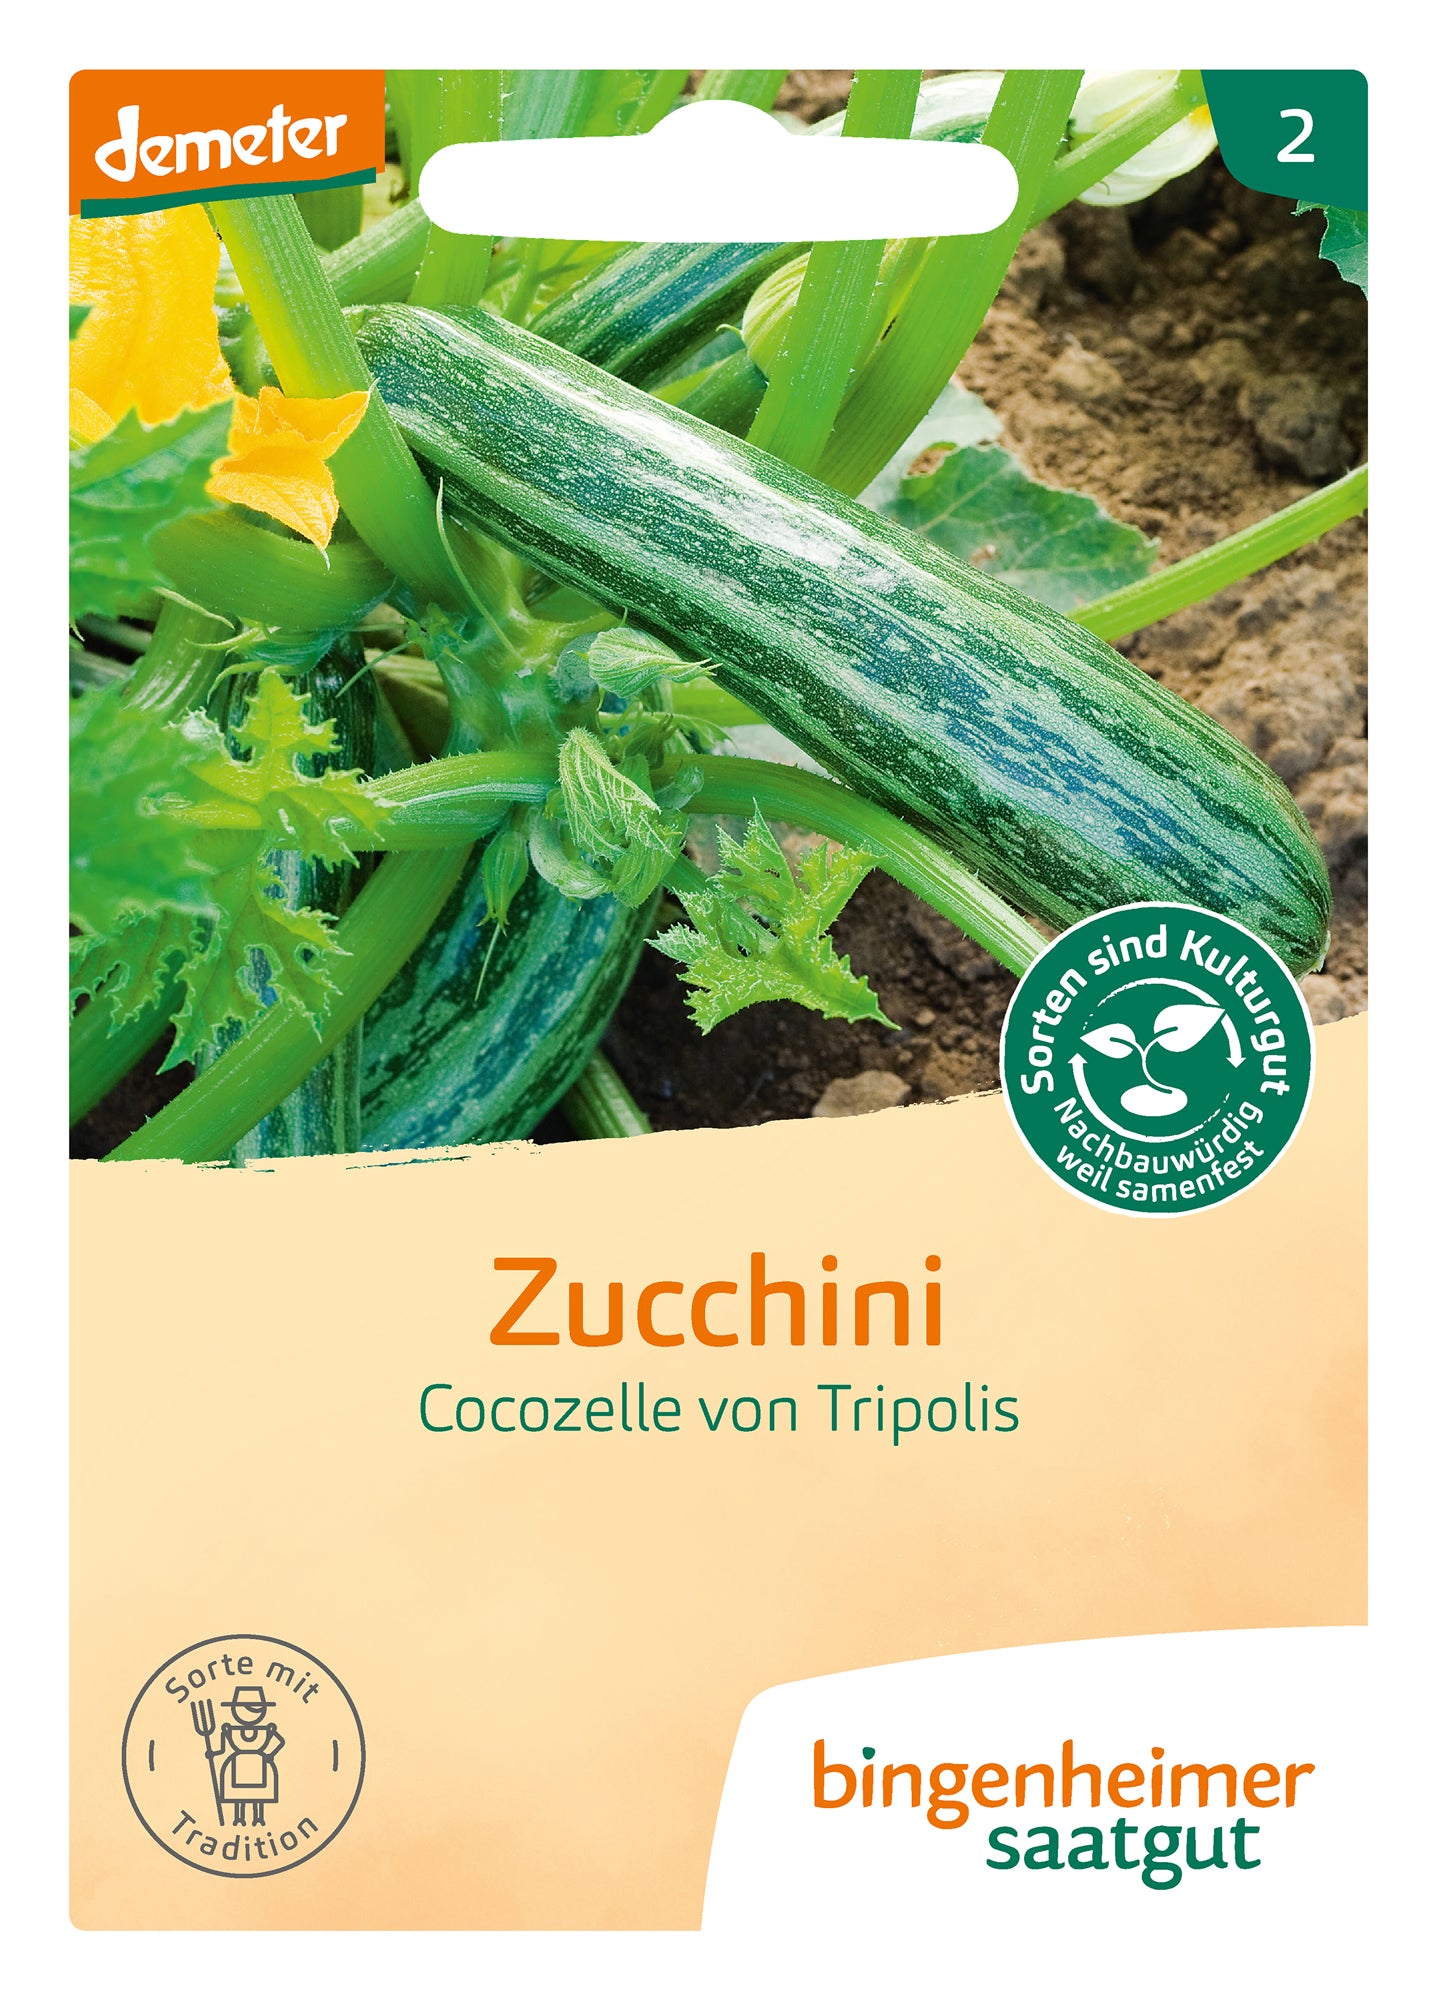 Zucchini Cocozelle von Tripolis | BIO Zucchinisamen von Bingenheimer Saatgut